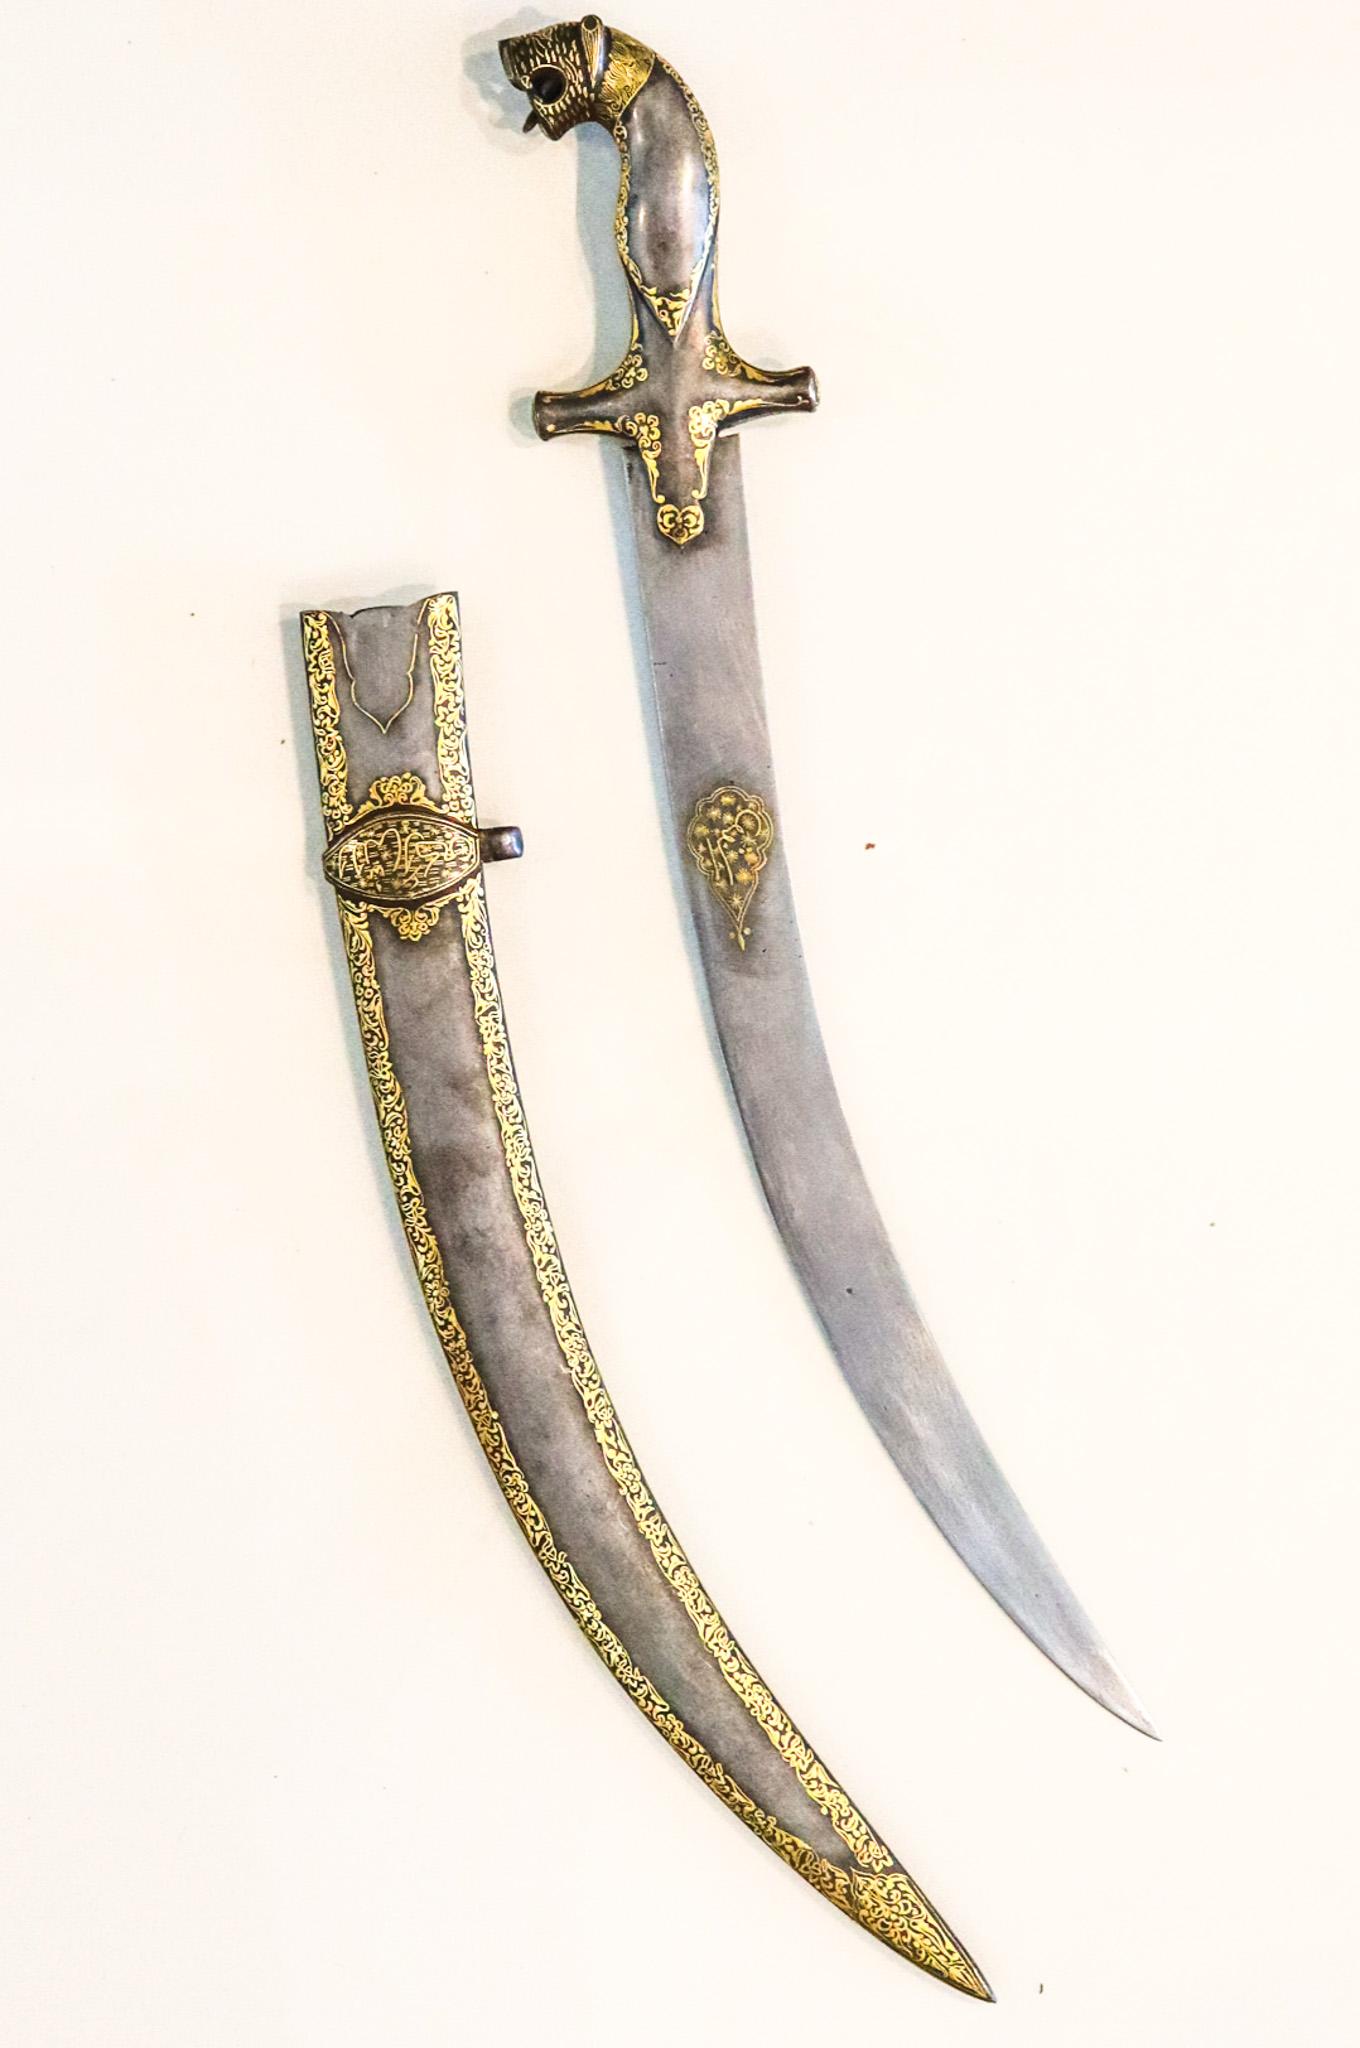 Islamic Turkish Arab 1820 Damascene Dagger with Sheath in Forged Steel and 24 Karat Gold